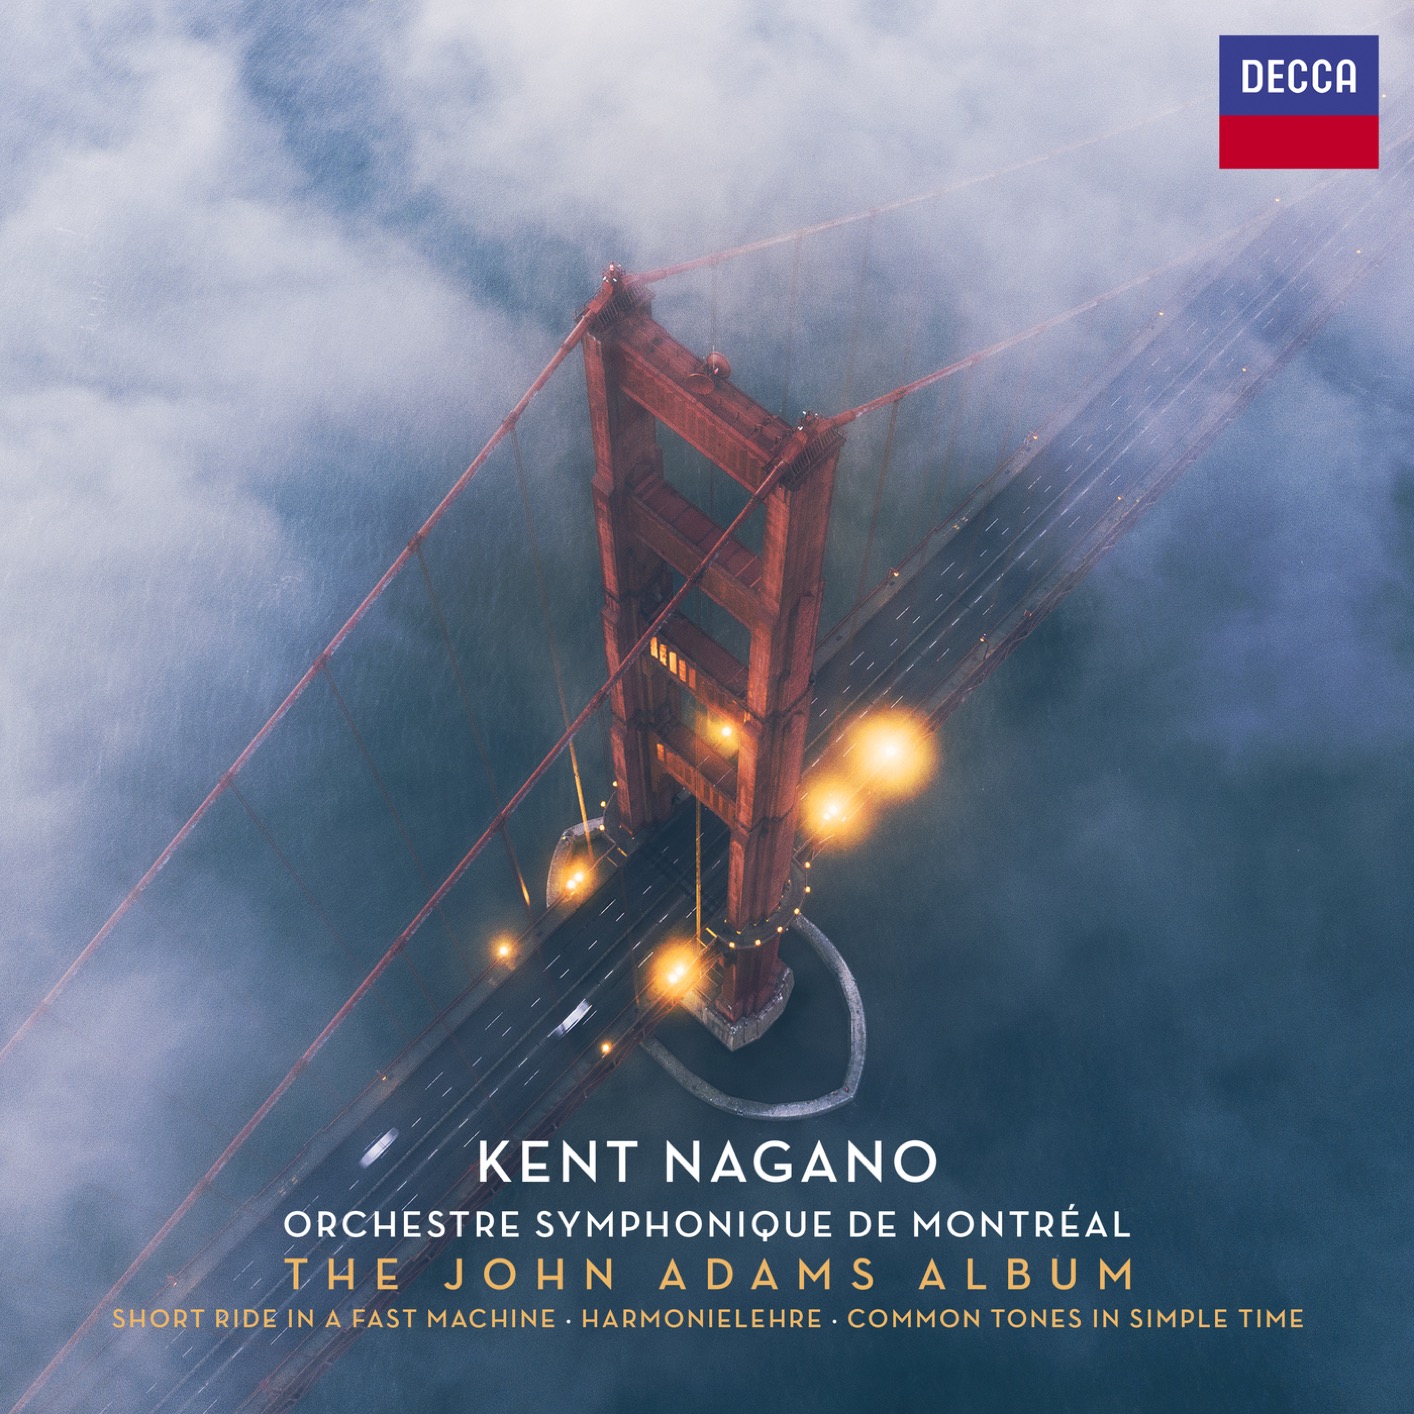 Orchestre Symphonique de Montreal & Kent Nagano – The John Adams Album (2019) [FLAC 24bit/96kHz]